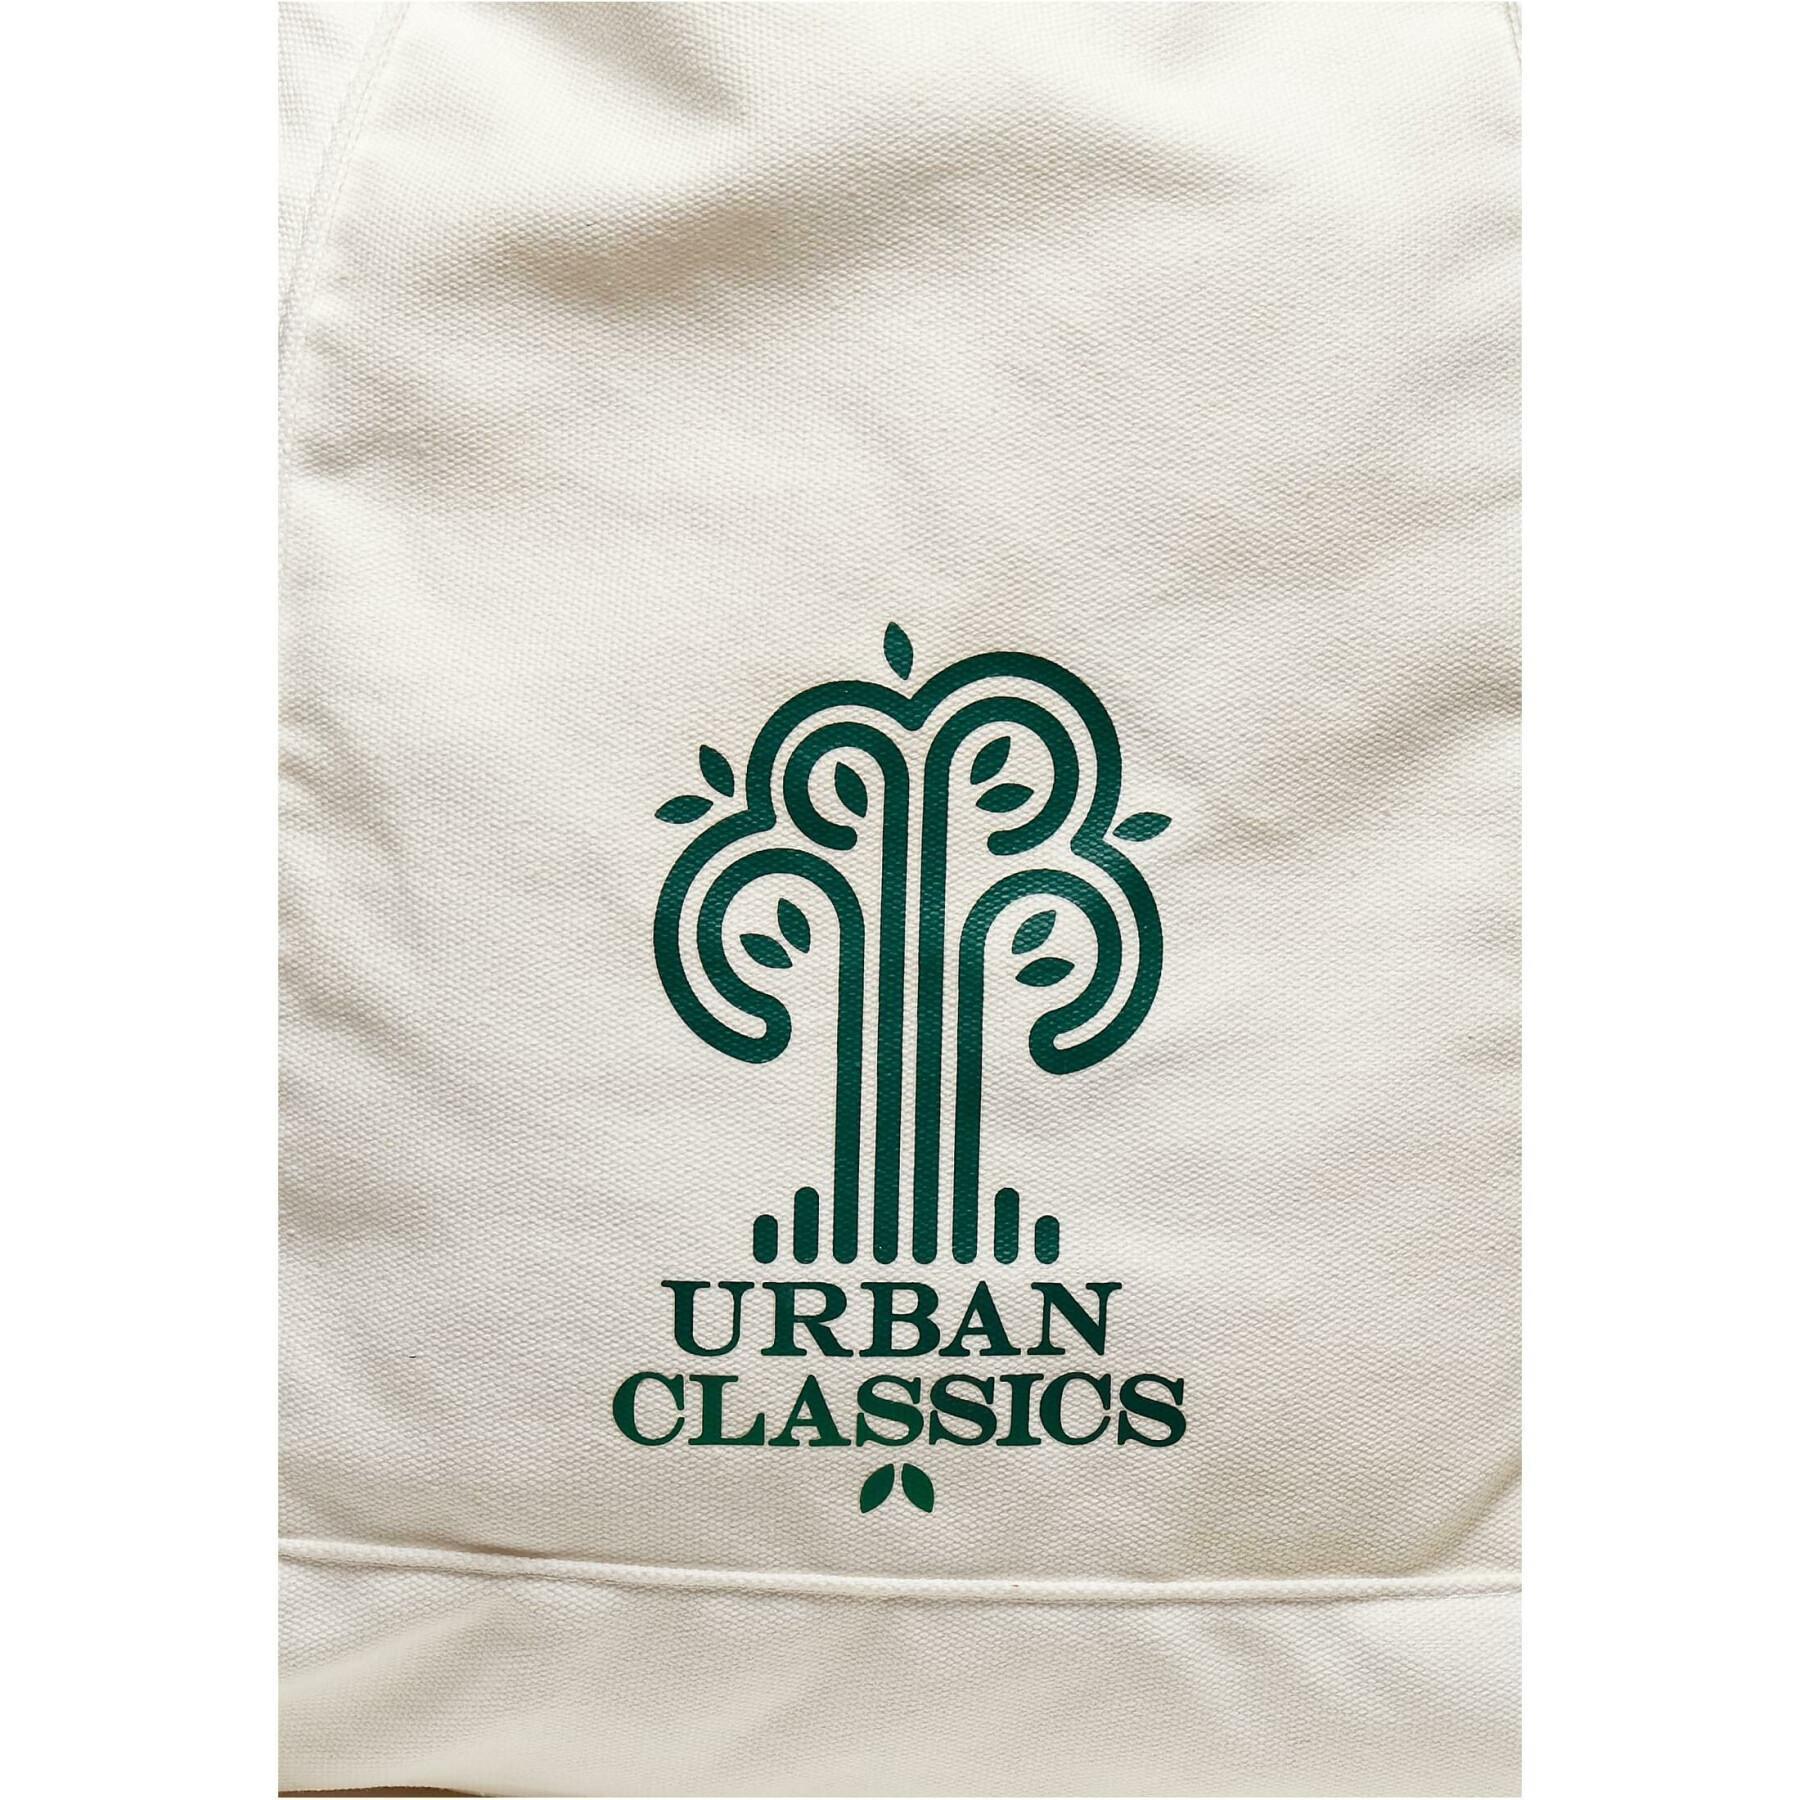 Płócienna torba na kółkach z logo Urban Classics